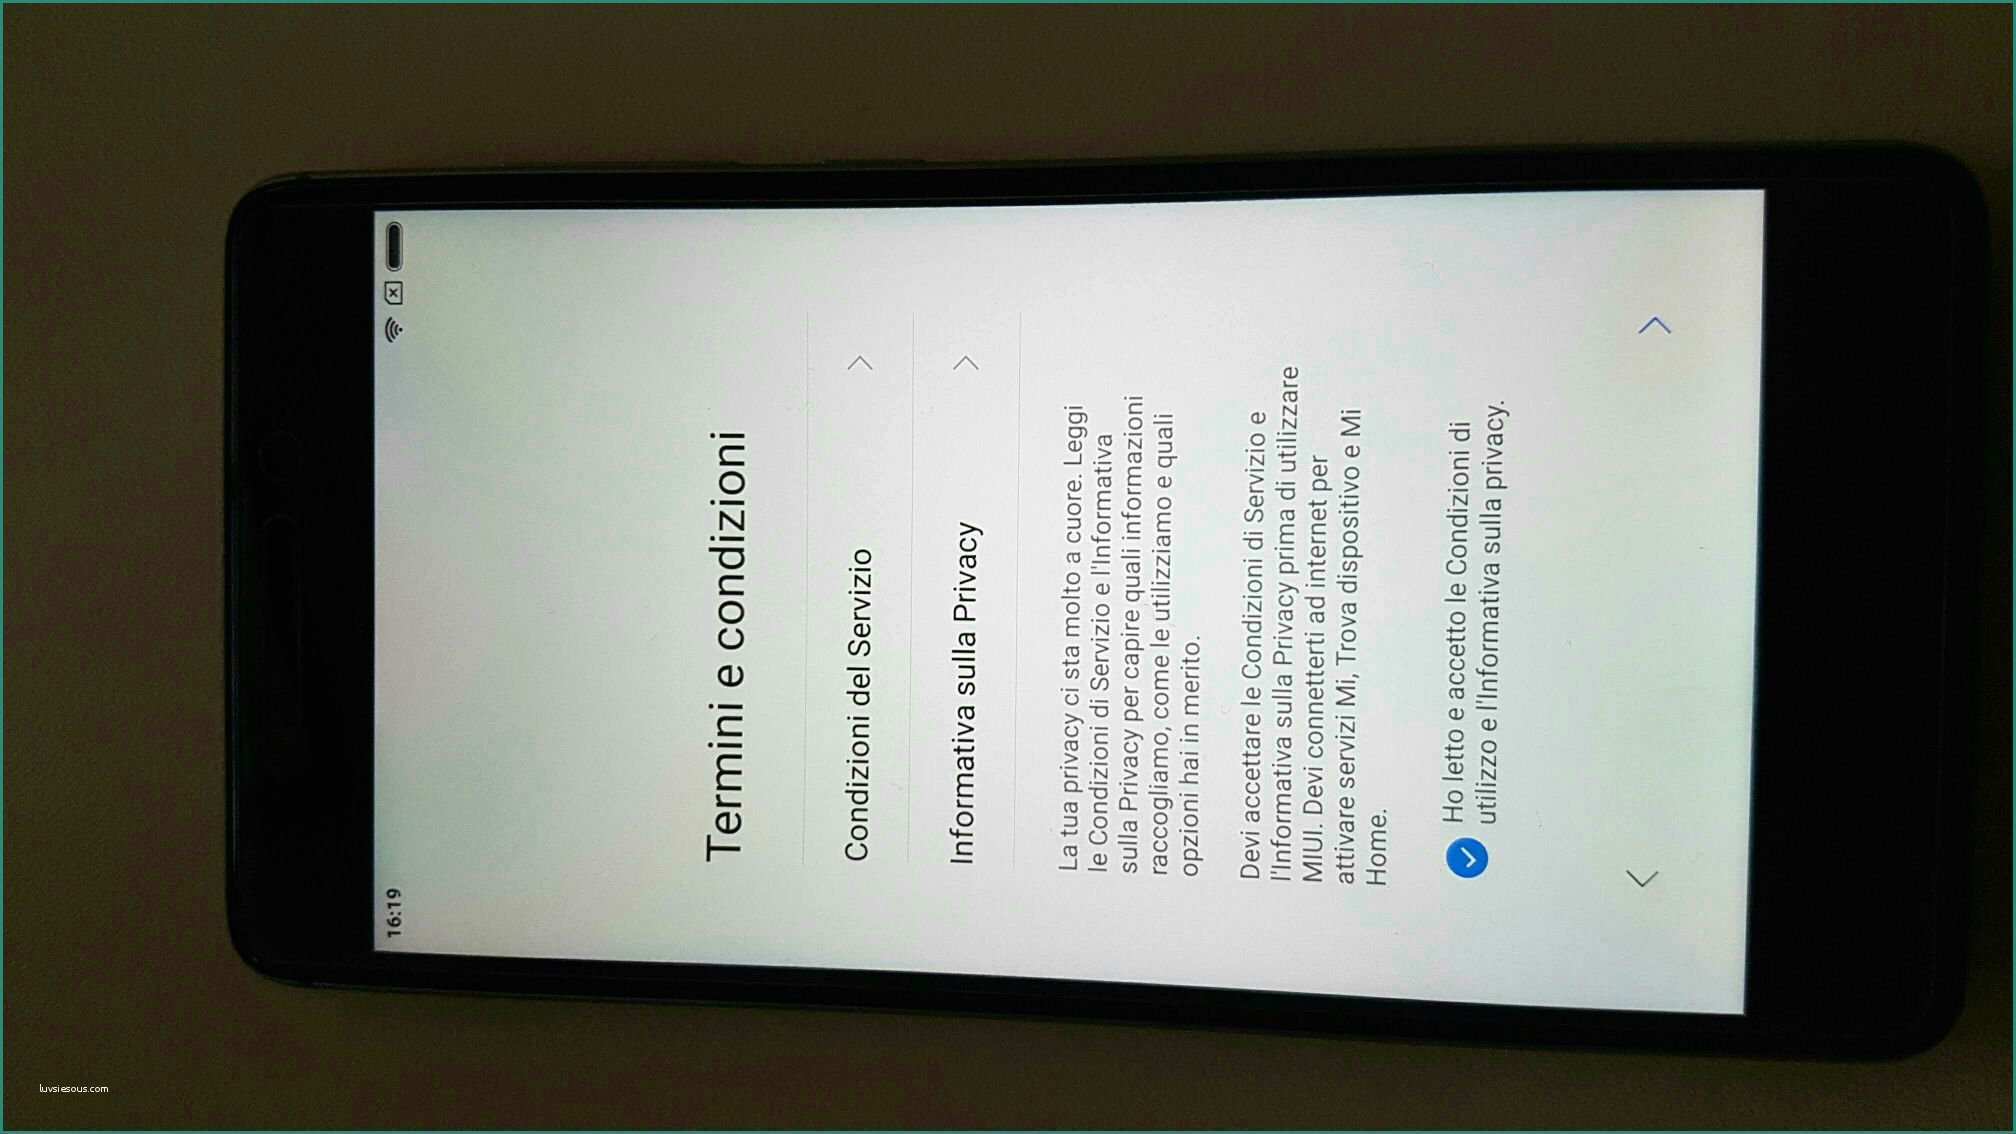 Nexus X Stockisti E I Consigli Per Gli Acquisti [archivio] Pagina 13 the Games Machine